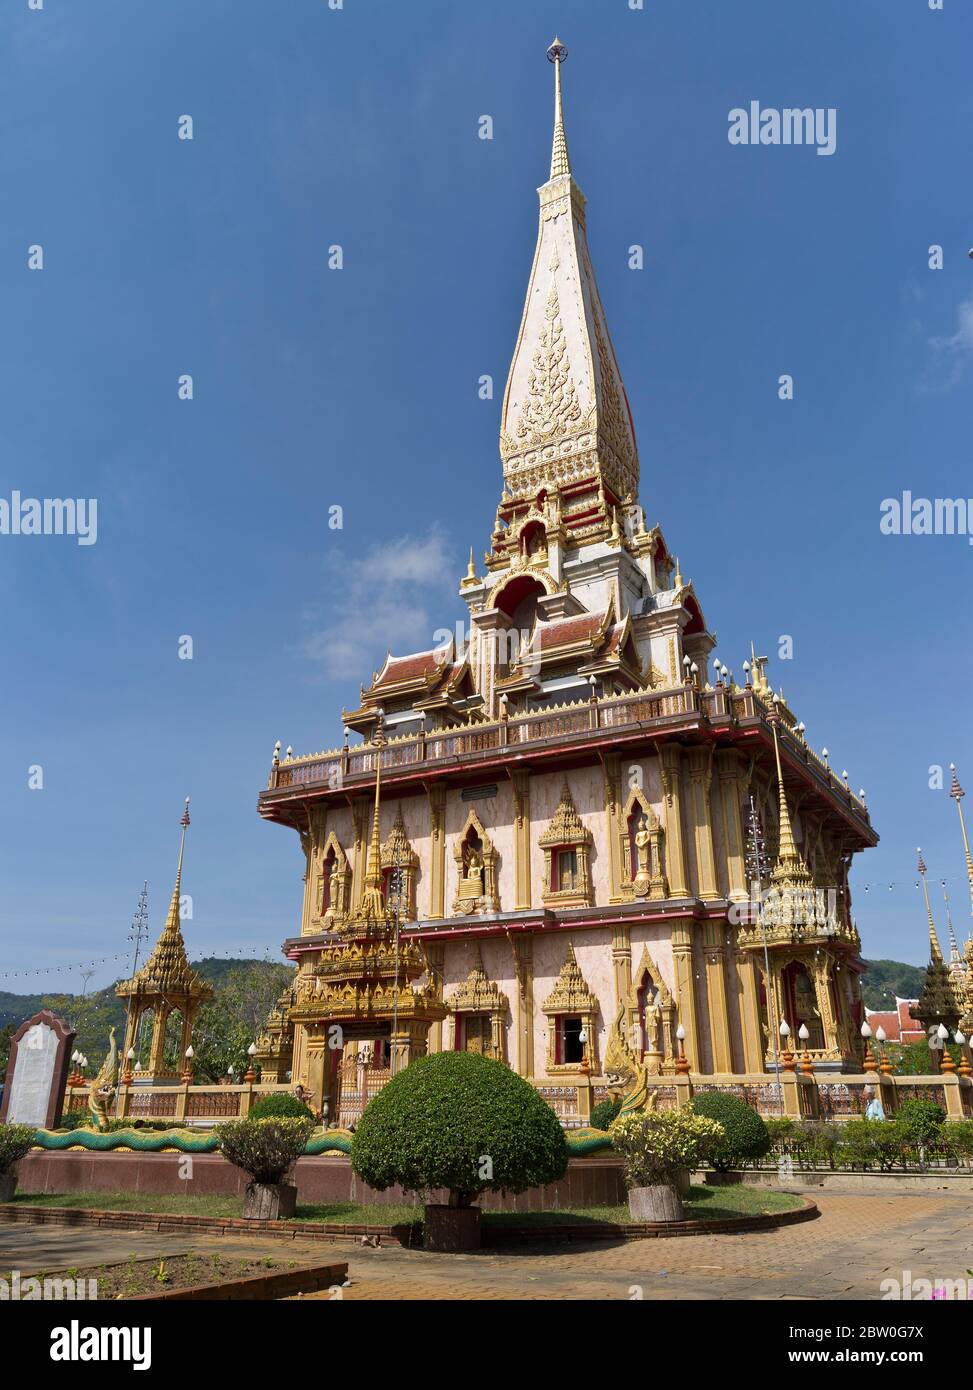 dh Wat chalong Buddhistischer Tempel PHUKET THAILAND Buddhismus Wat Chaiyatharam Tempel Pagode Stupa Chedi Pagoden Stockfoto